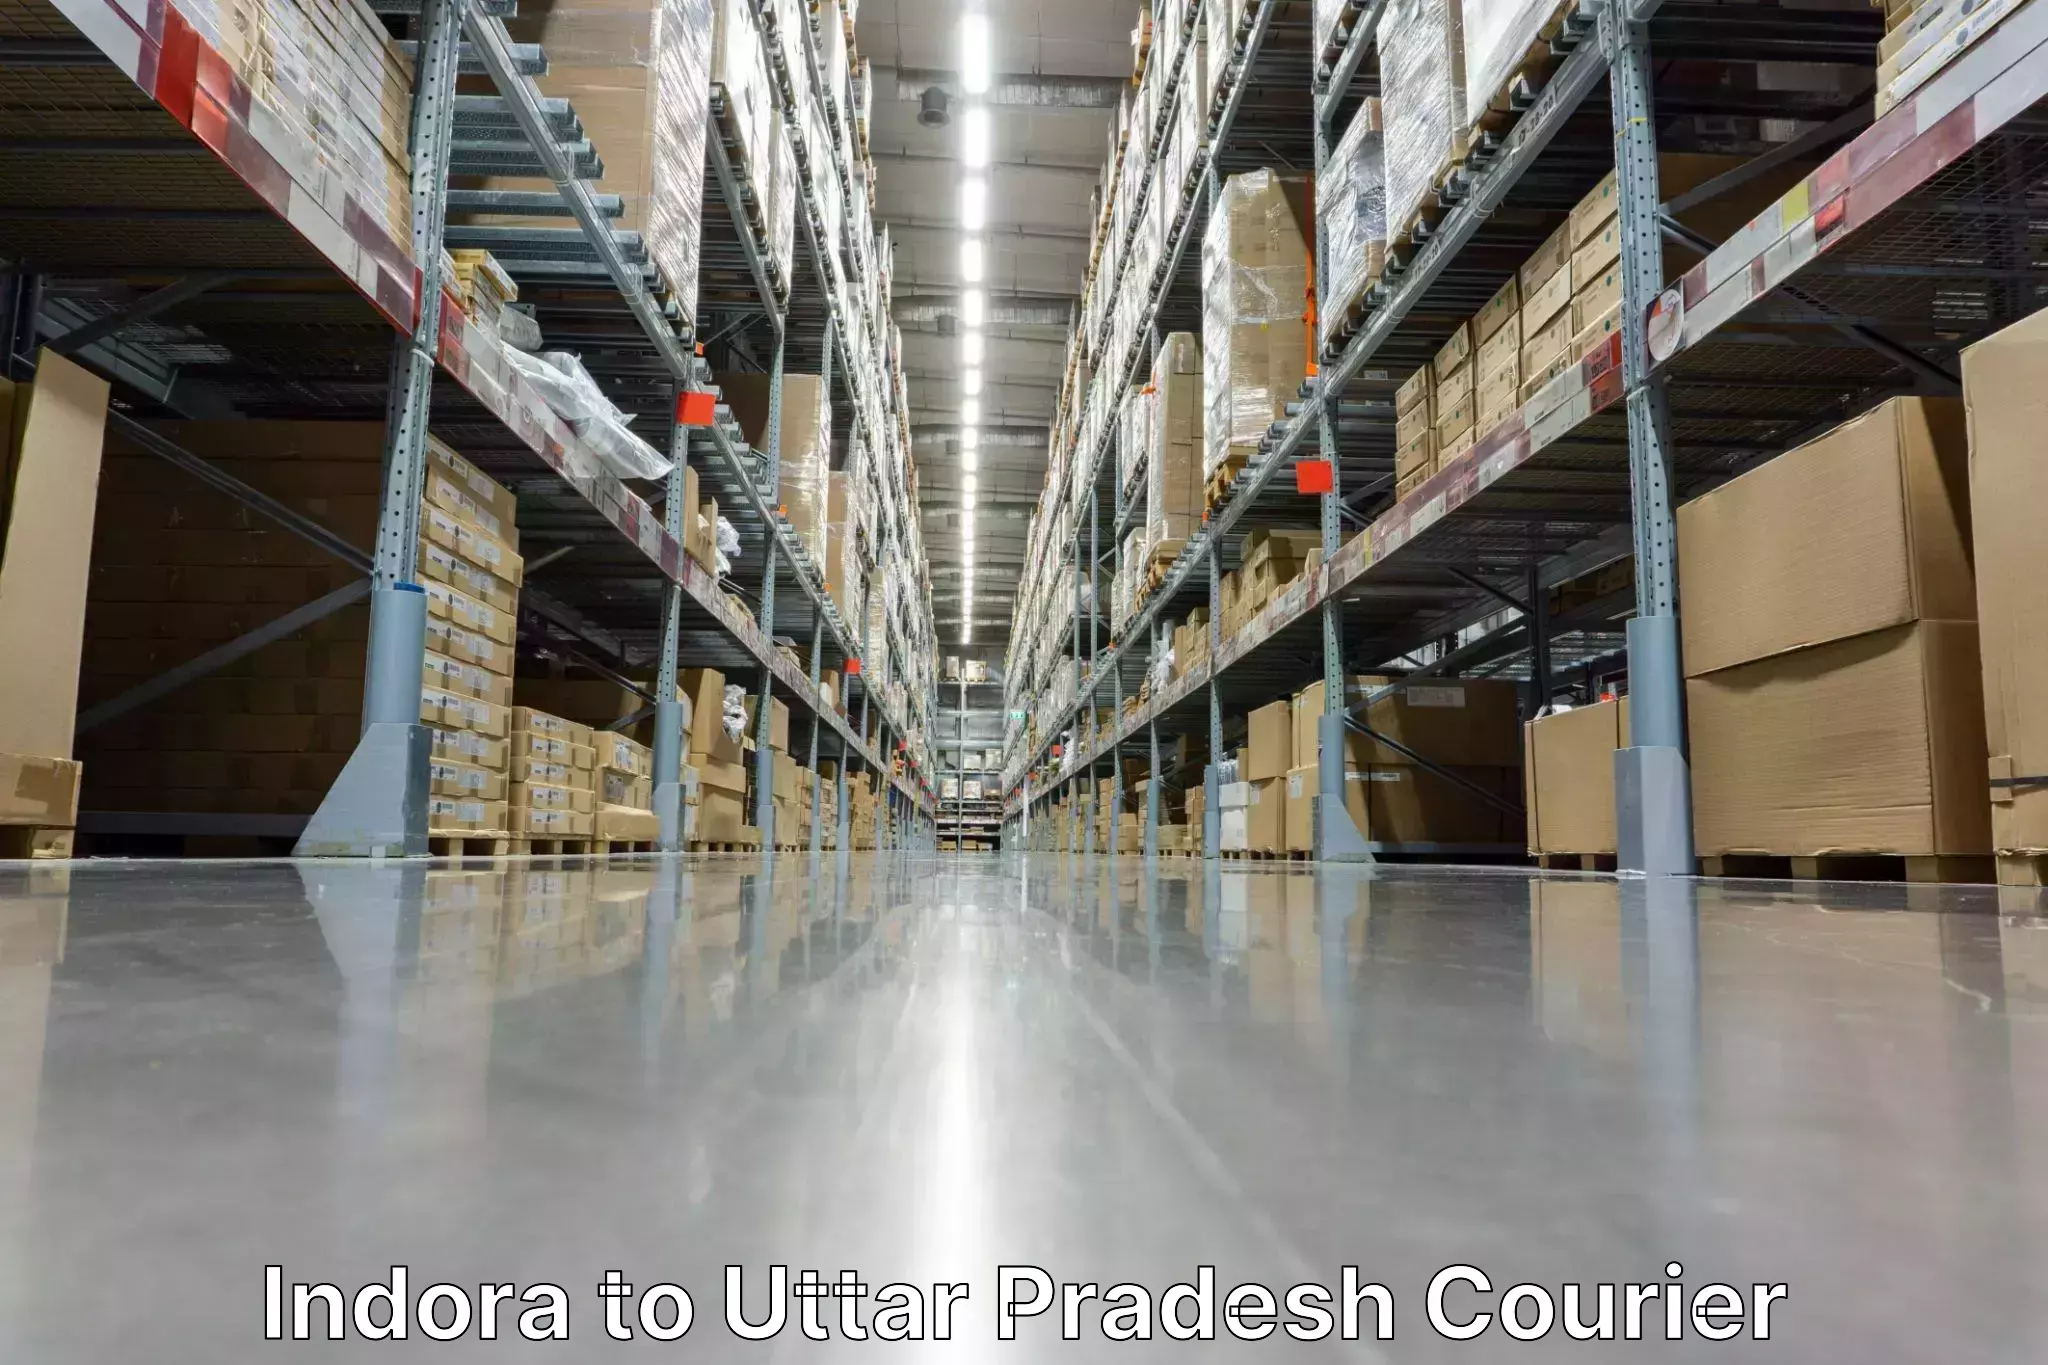 Courier app Indora to Vrindavan